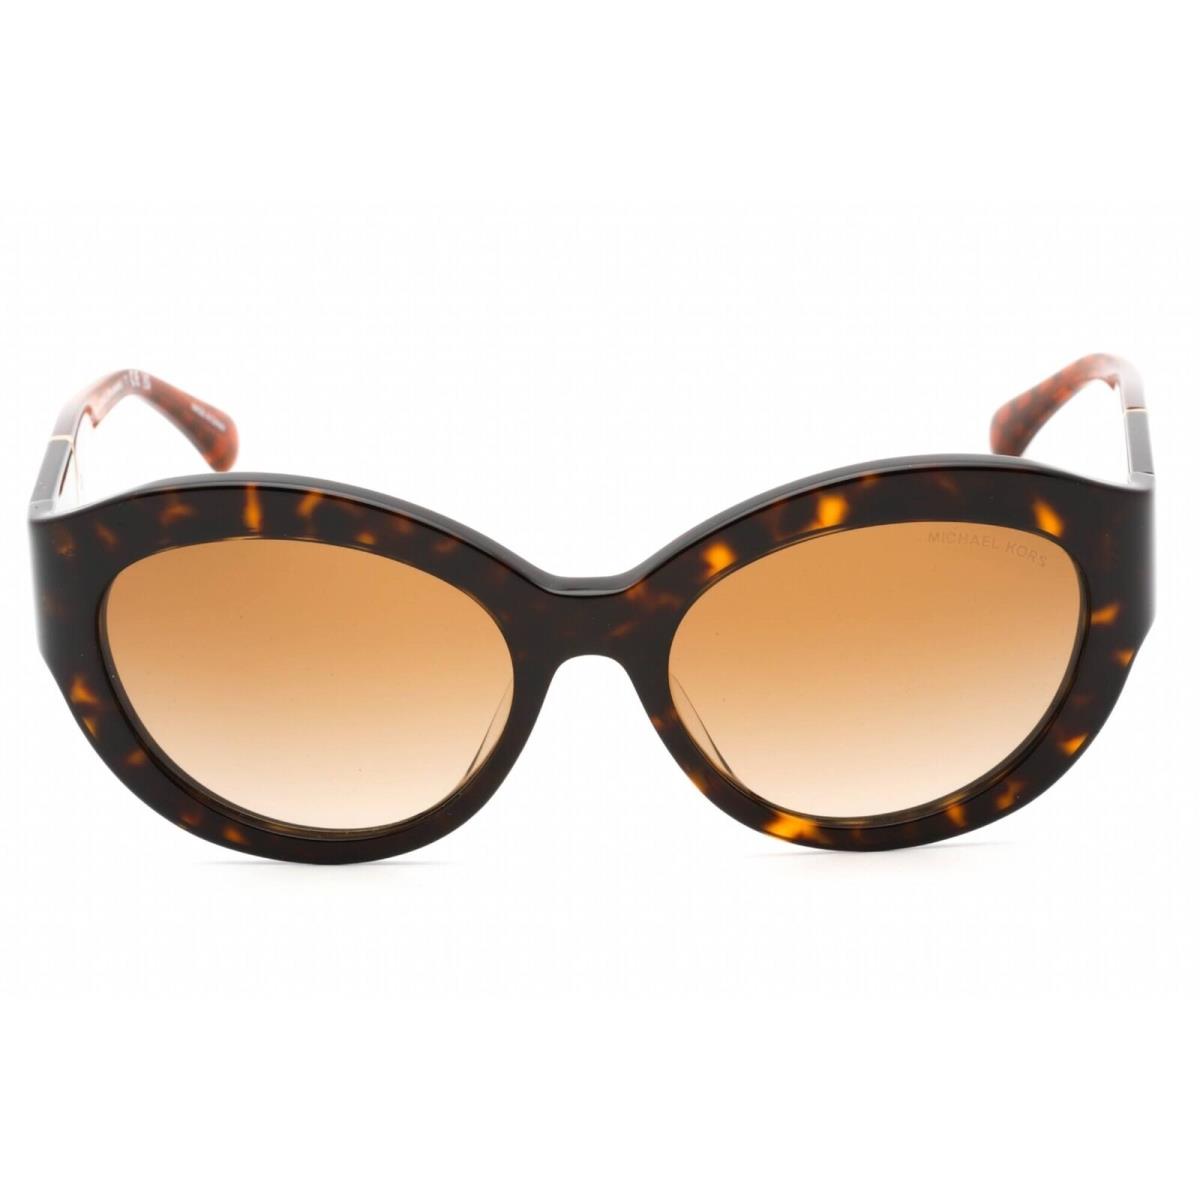 Michael Kors Women`s Sunglasses Tortoise Plastic Full Rim Frame 0MK2204U 300613